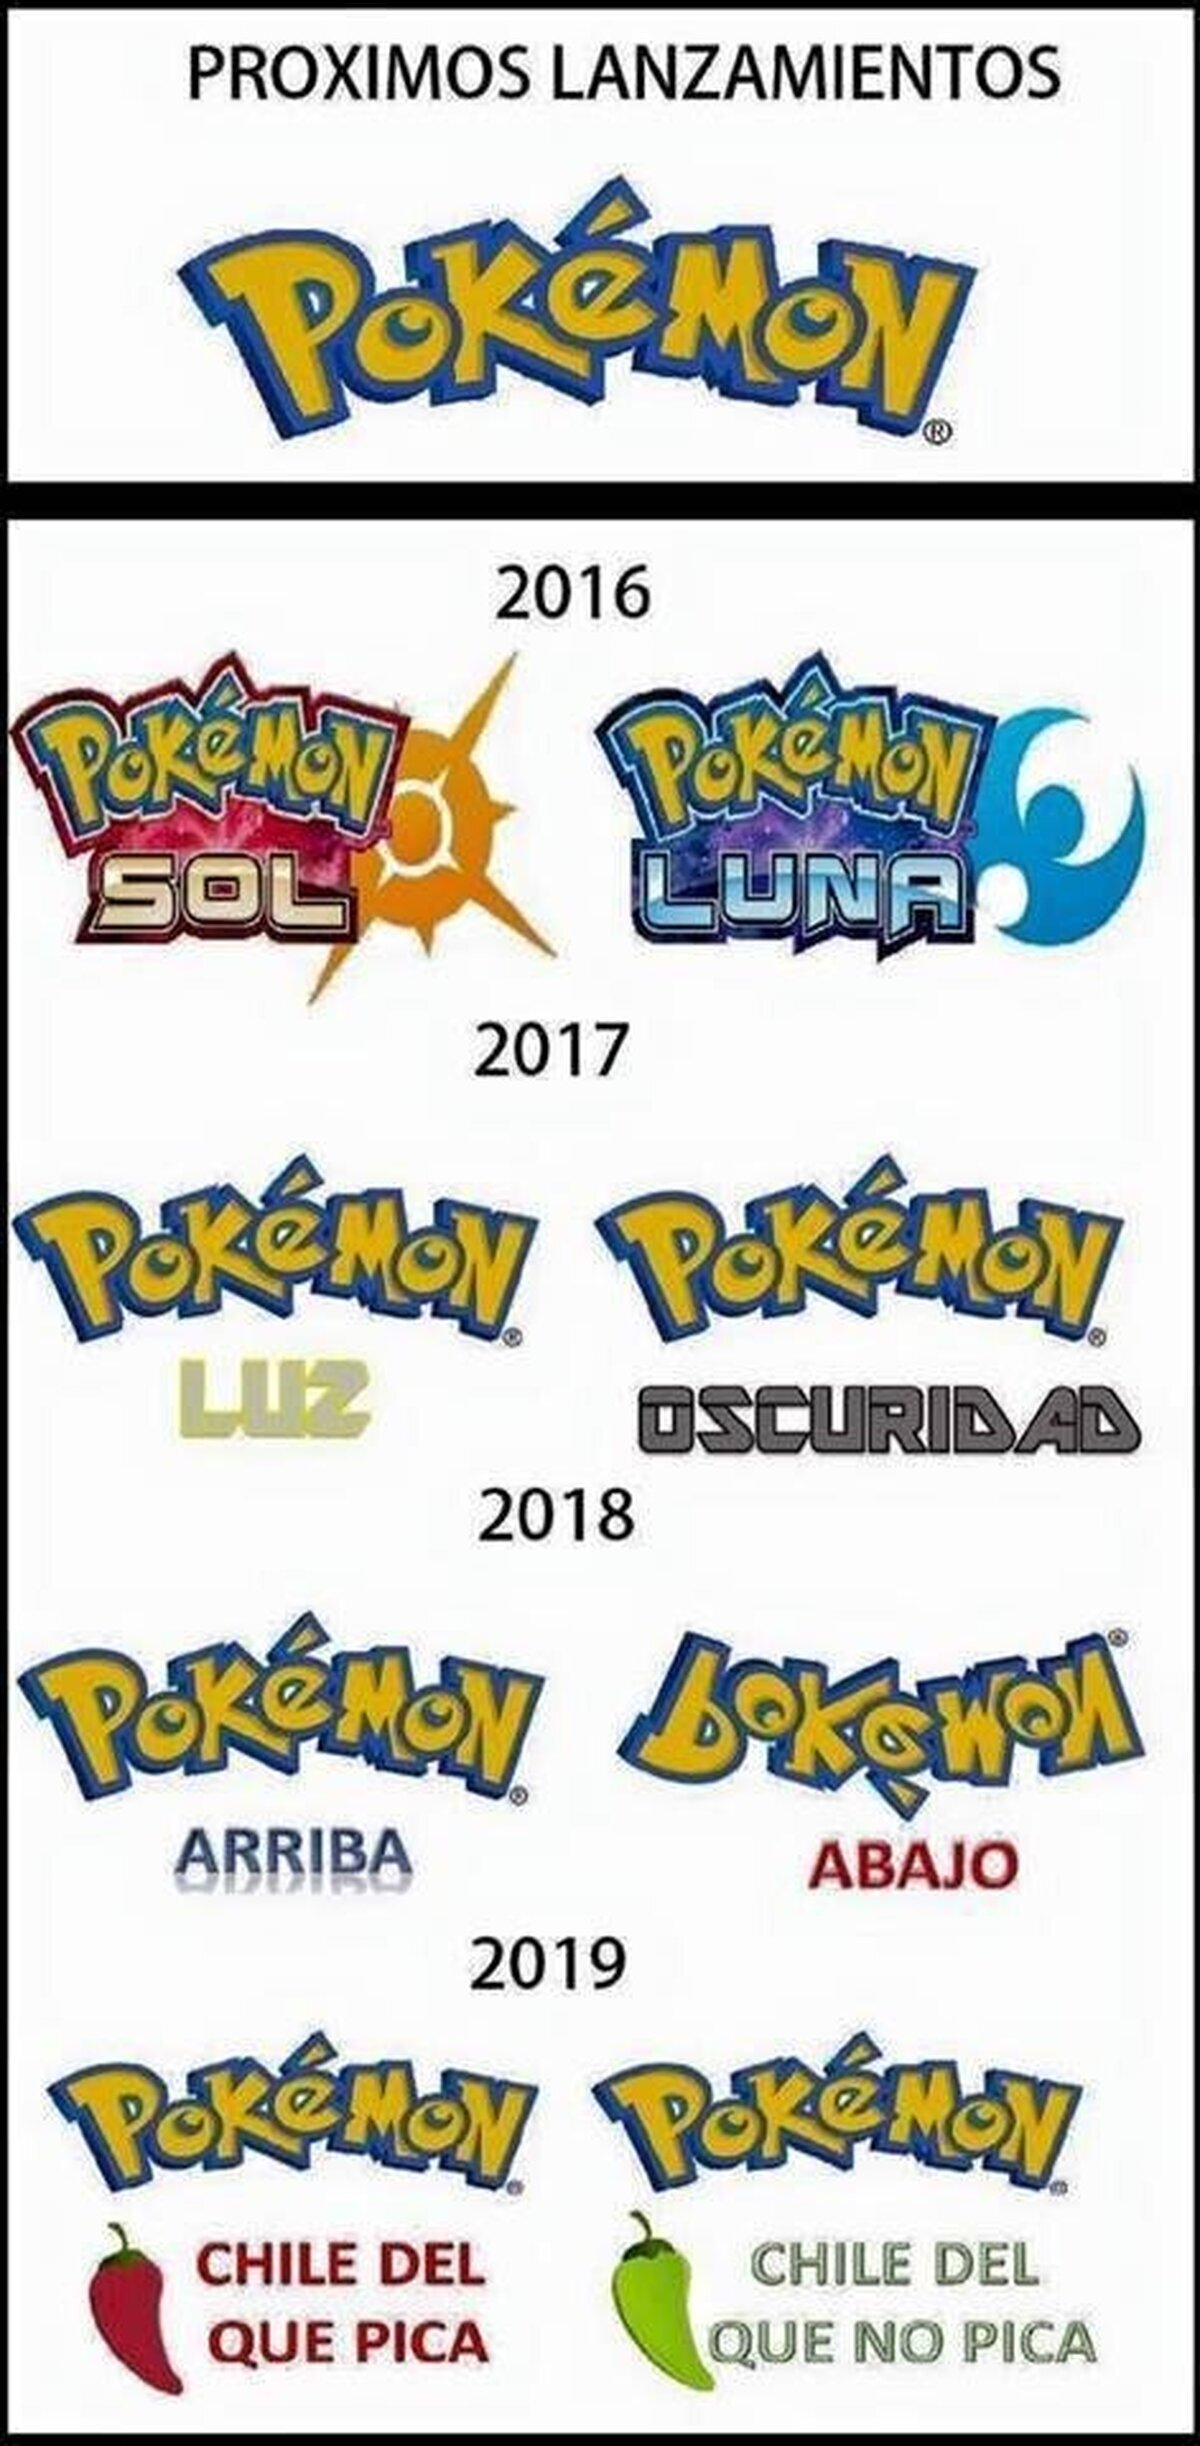 Se revelan los proximos lanzamientos de Pokémon